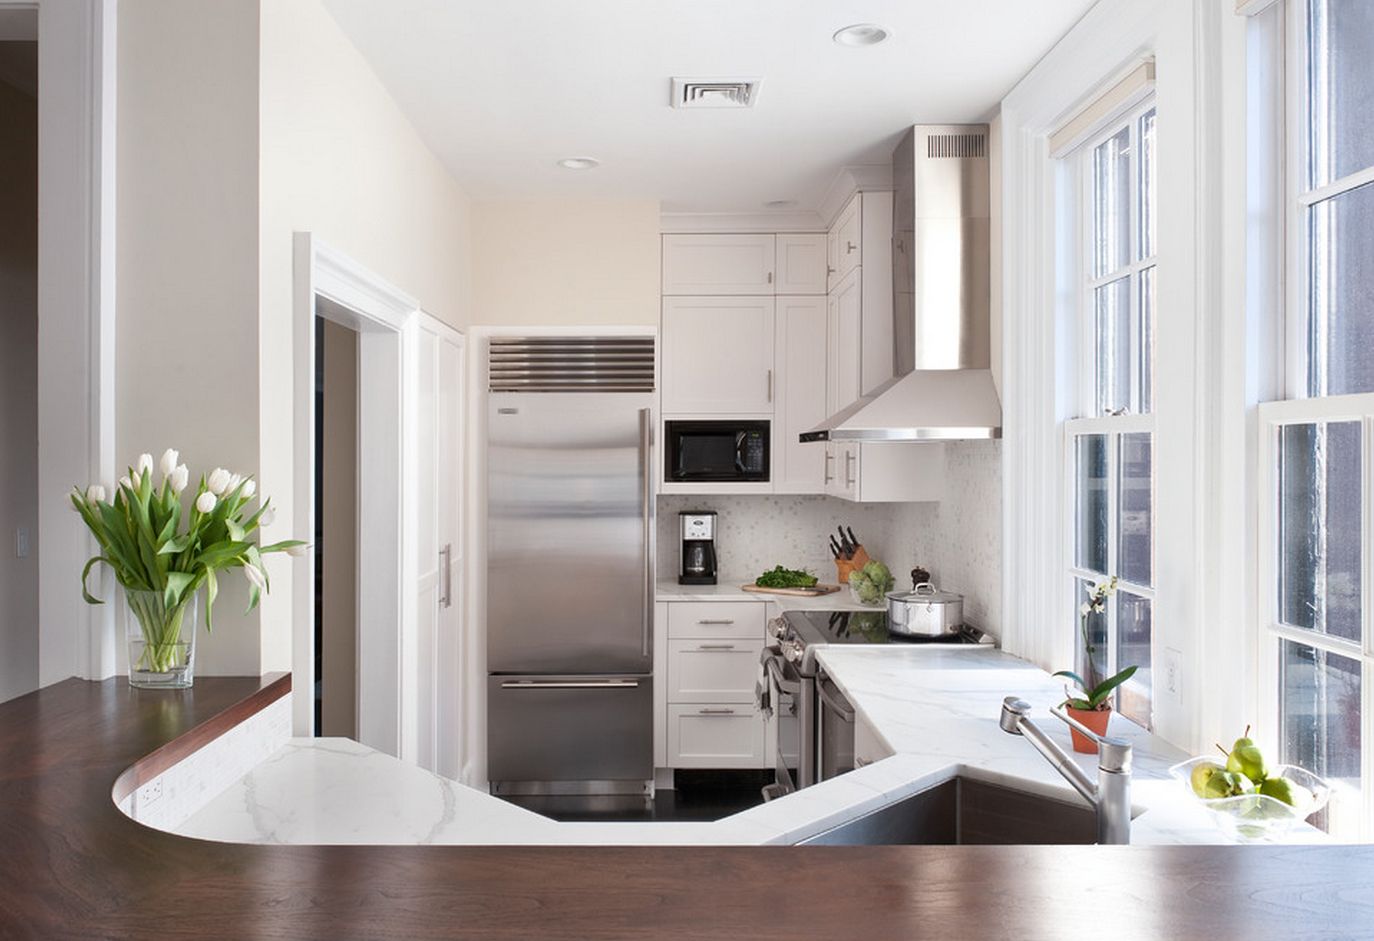 Дизайн кухни малогабаритной квартиры с холодильником фото